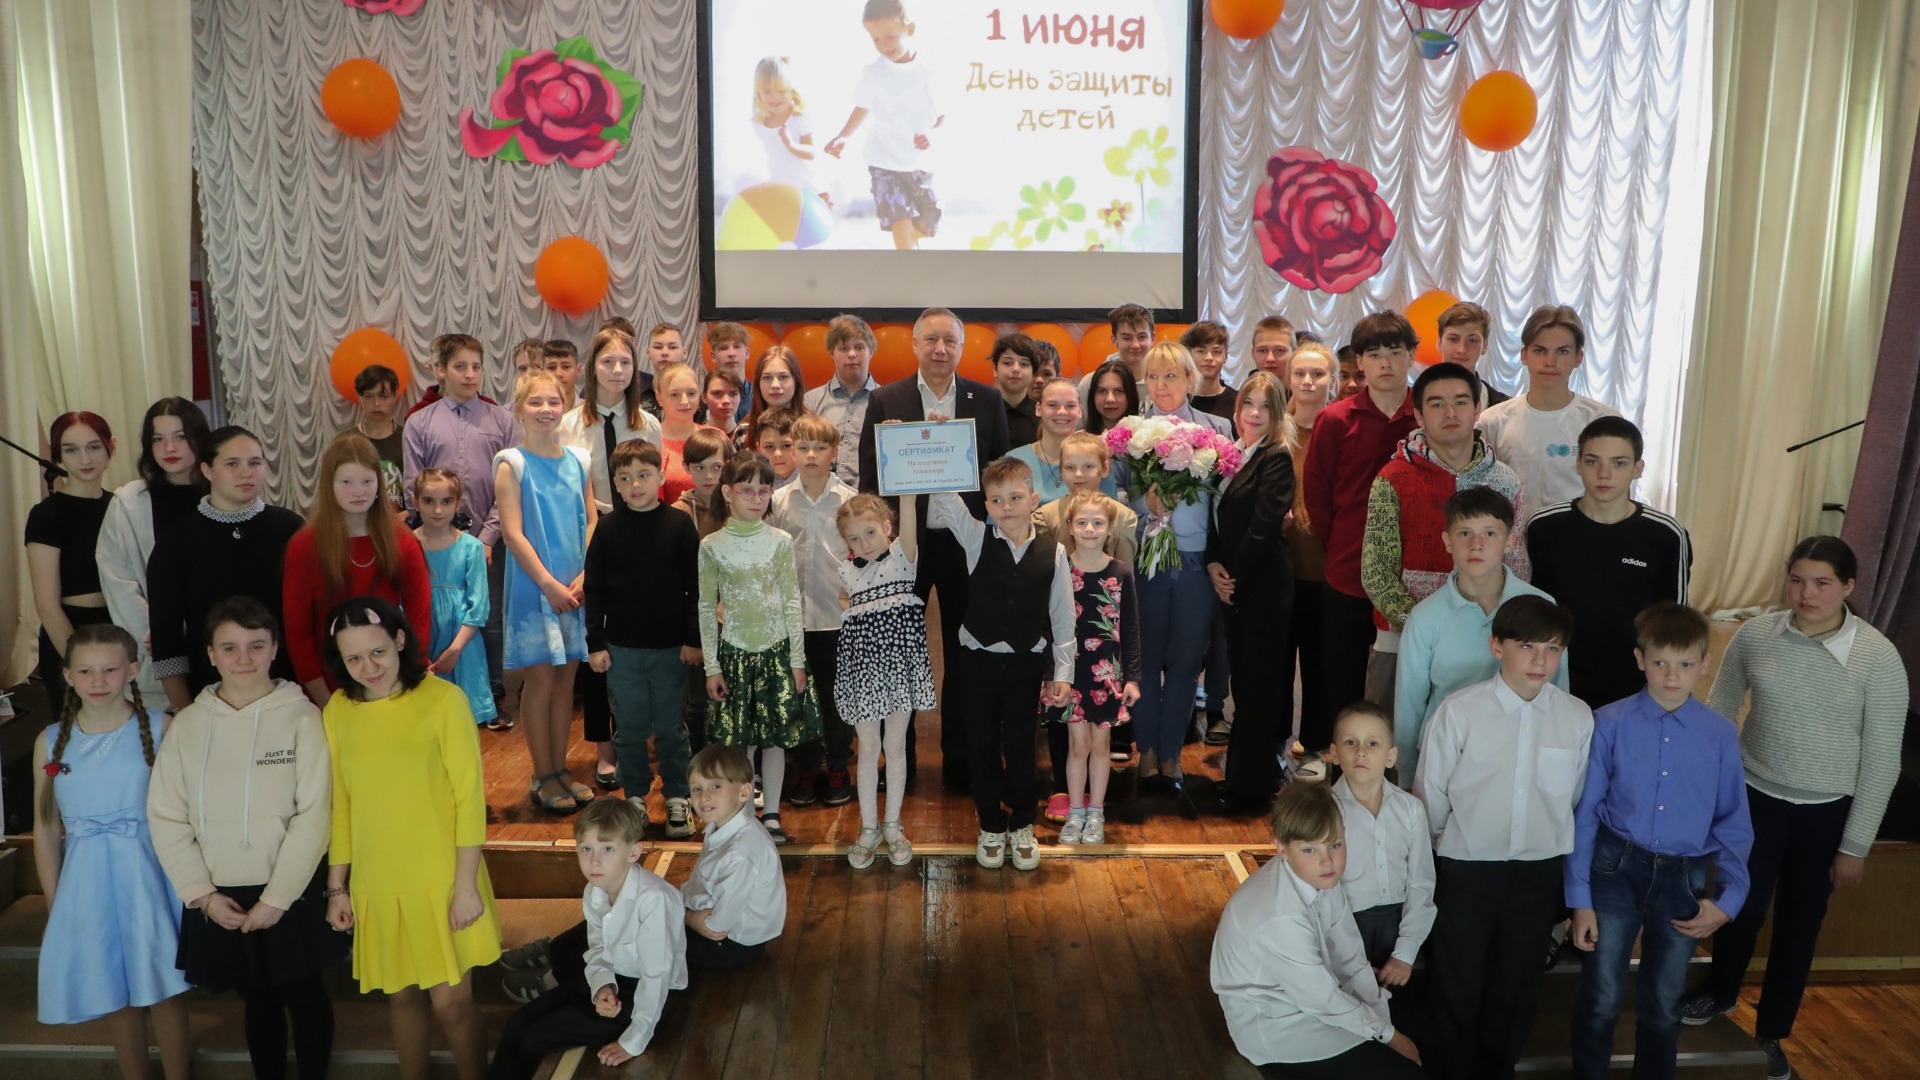 Беглов в День защиты детей умолчал о дефиците школ